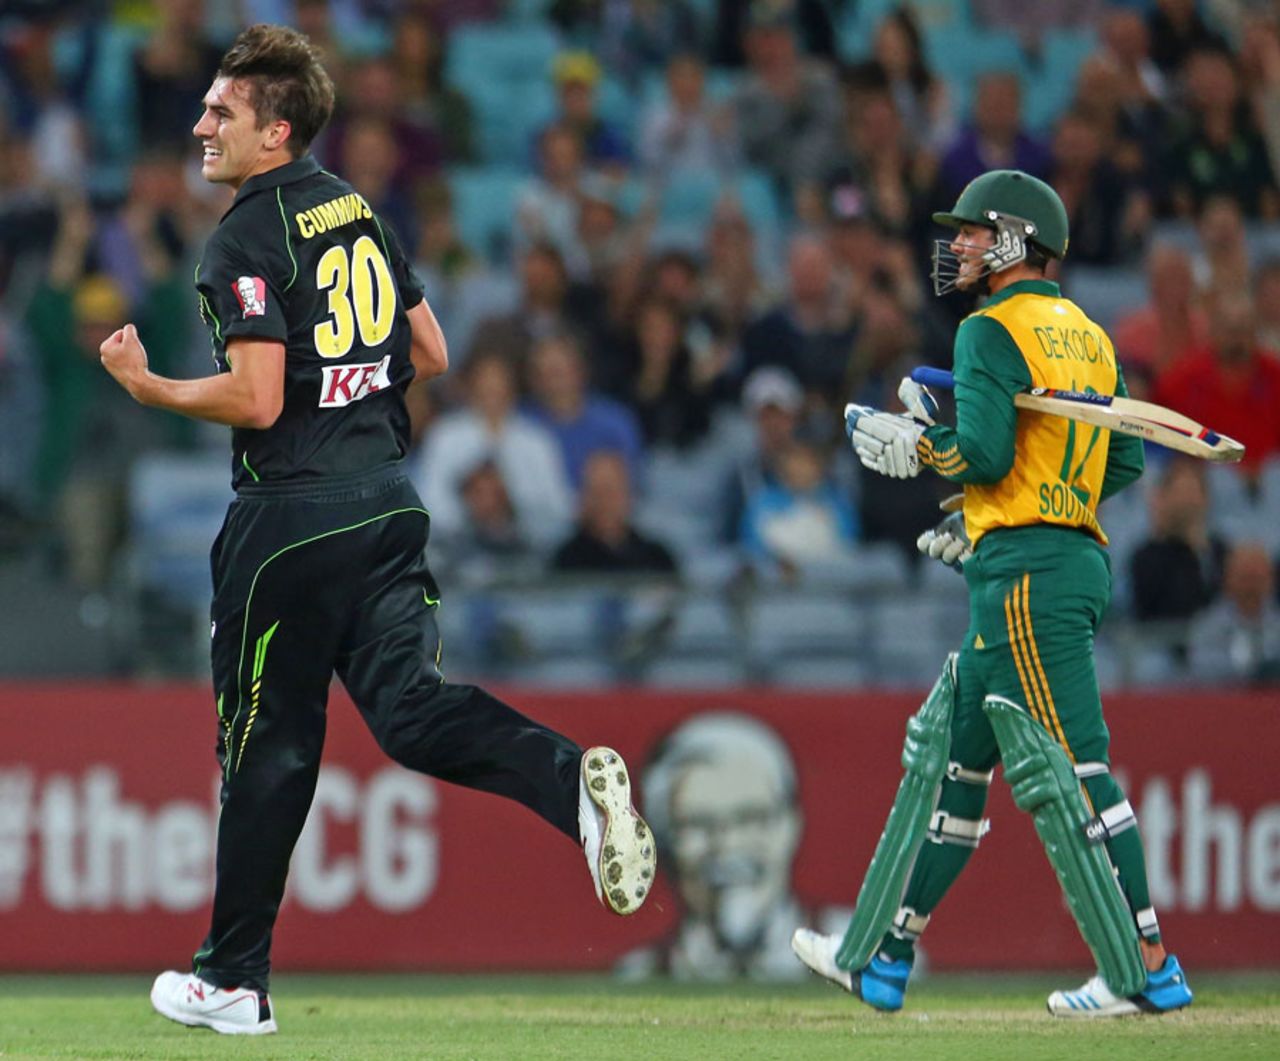 Pat Cummins celebrates after dismissing Quinton de Kock, Australia v South Africa, 3rd Twenty20, Sydney, November 9, 2014